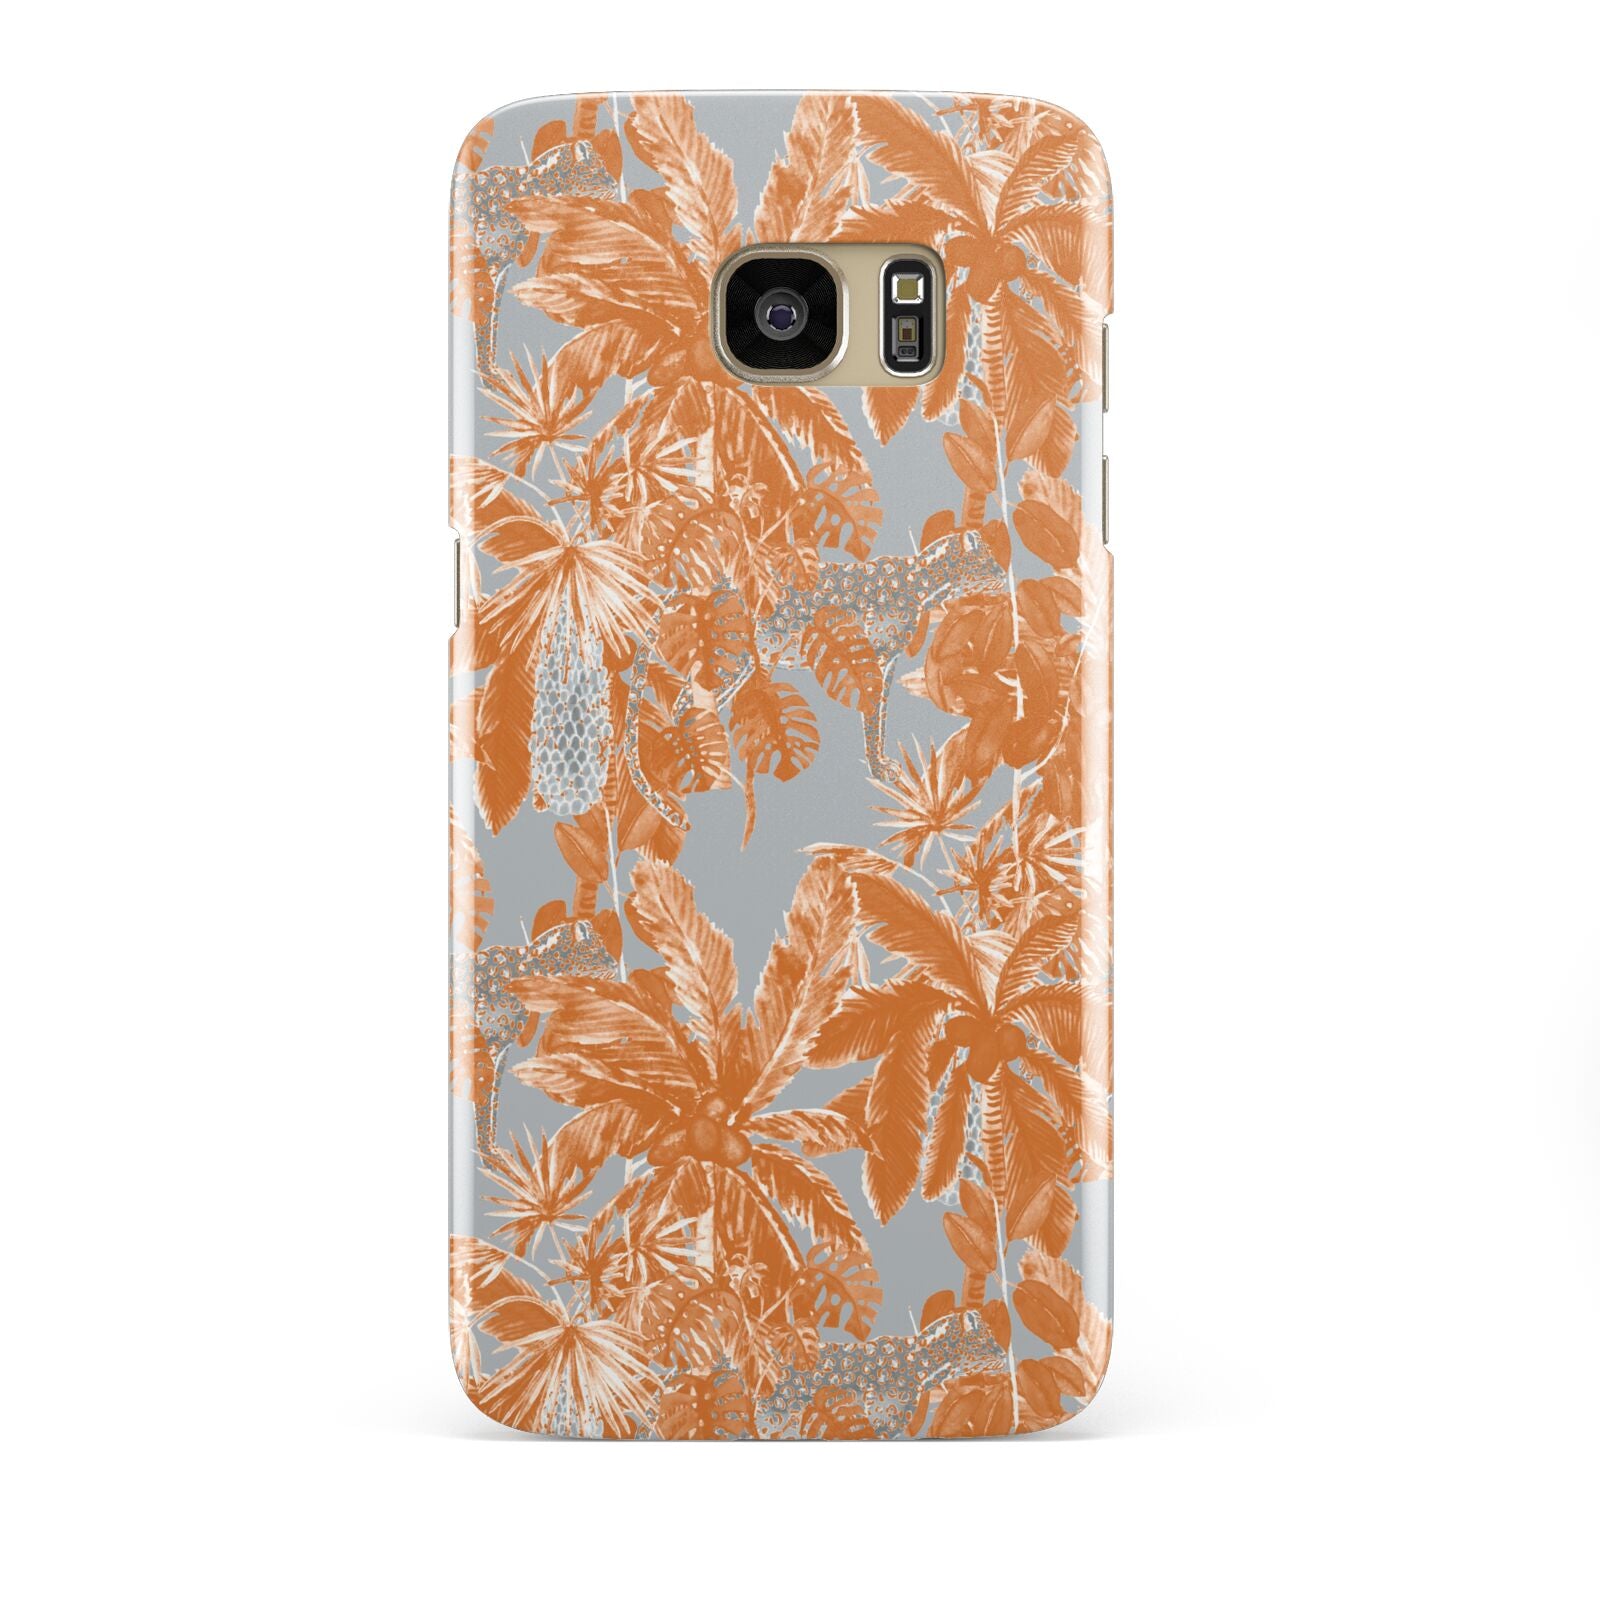 Tropical Samsung Galaxy S7 Edge Case